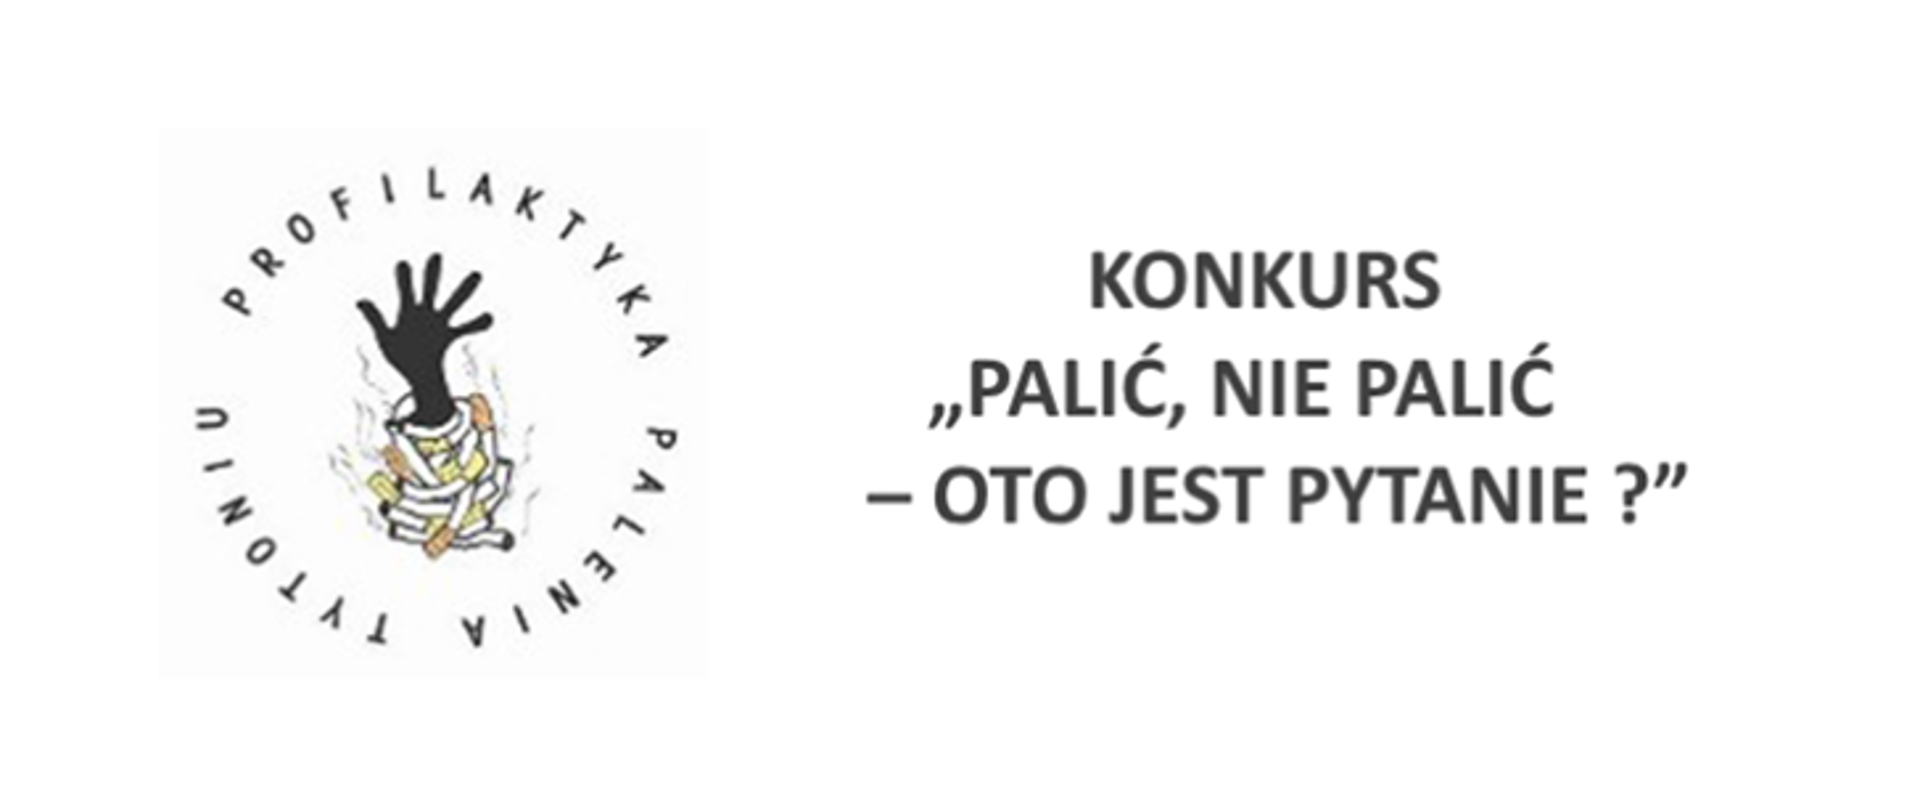 Ilustracja przedstawia logo o nazwie Profilaktyka Palenia Tytoniu oraz napis Konkurs "Palić, nie palić - oto jest pytanie? "